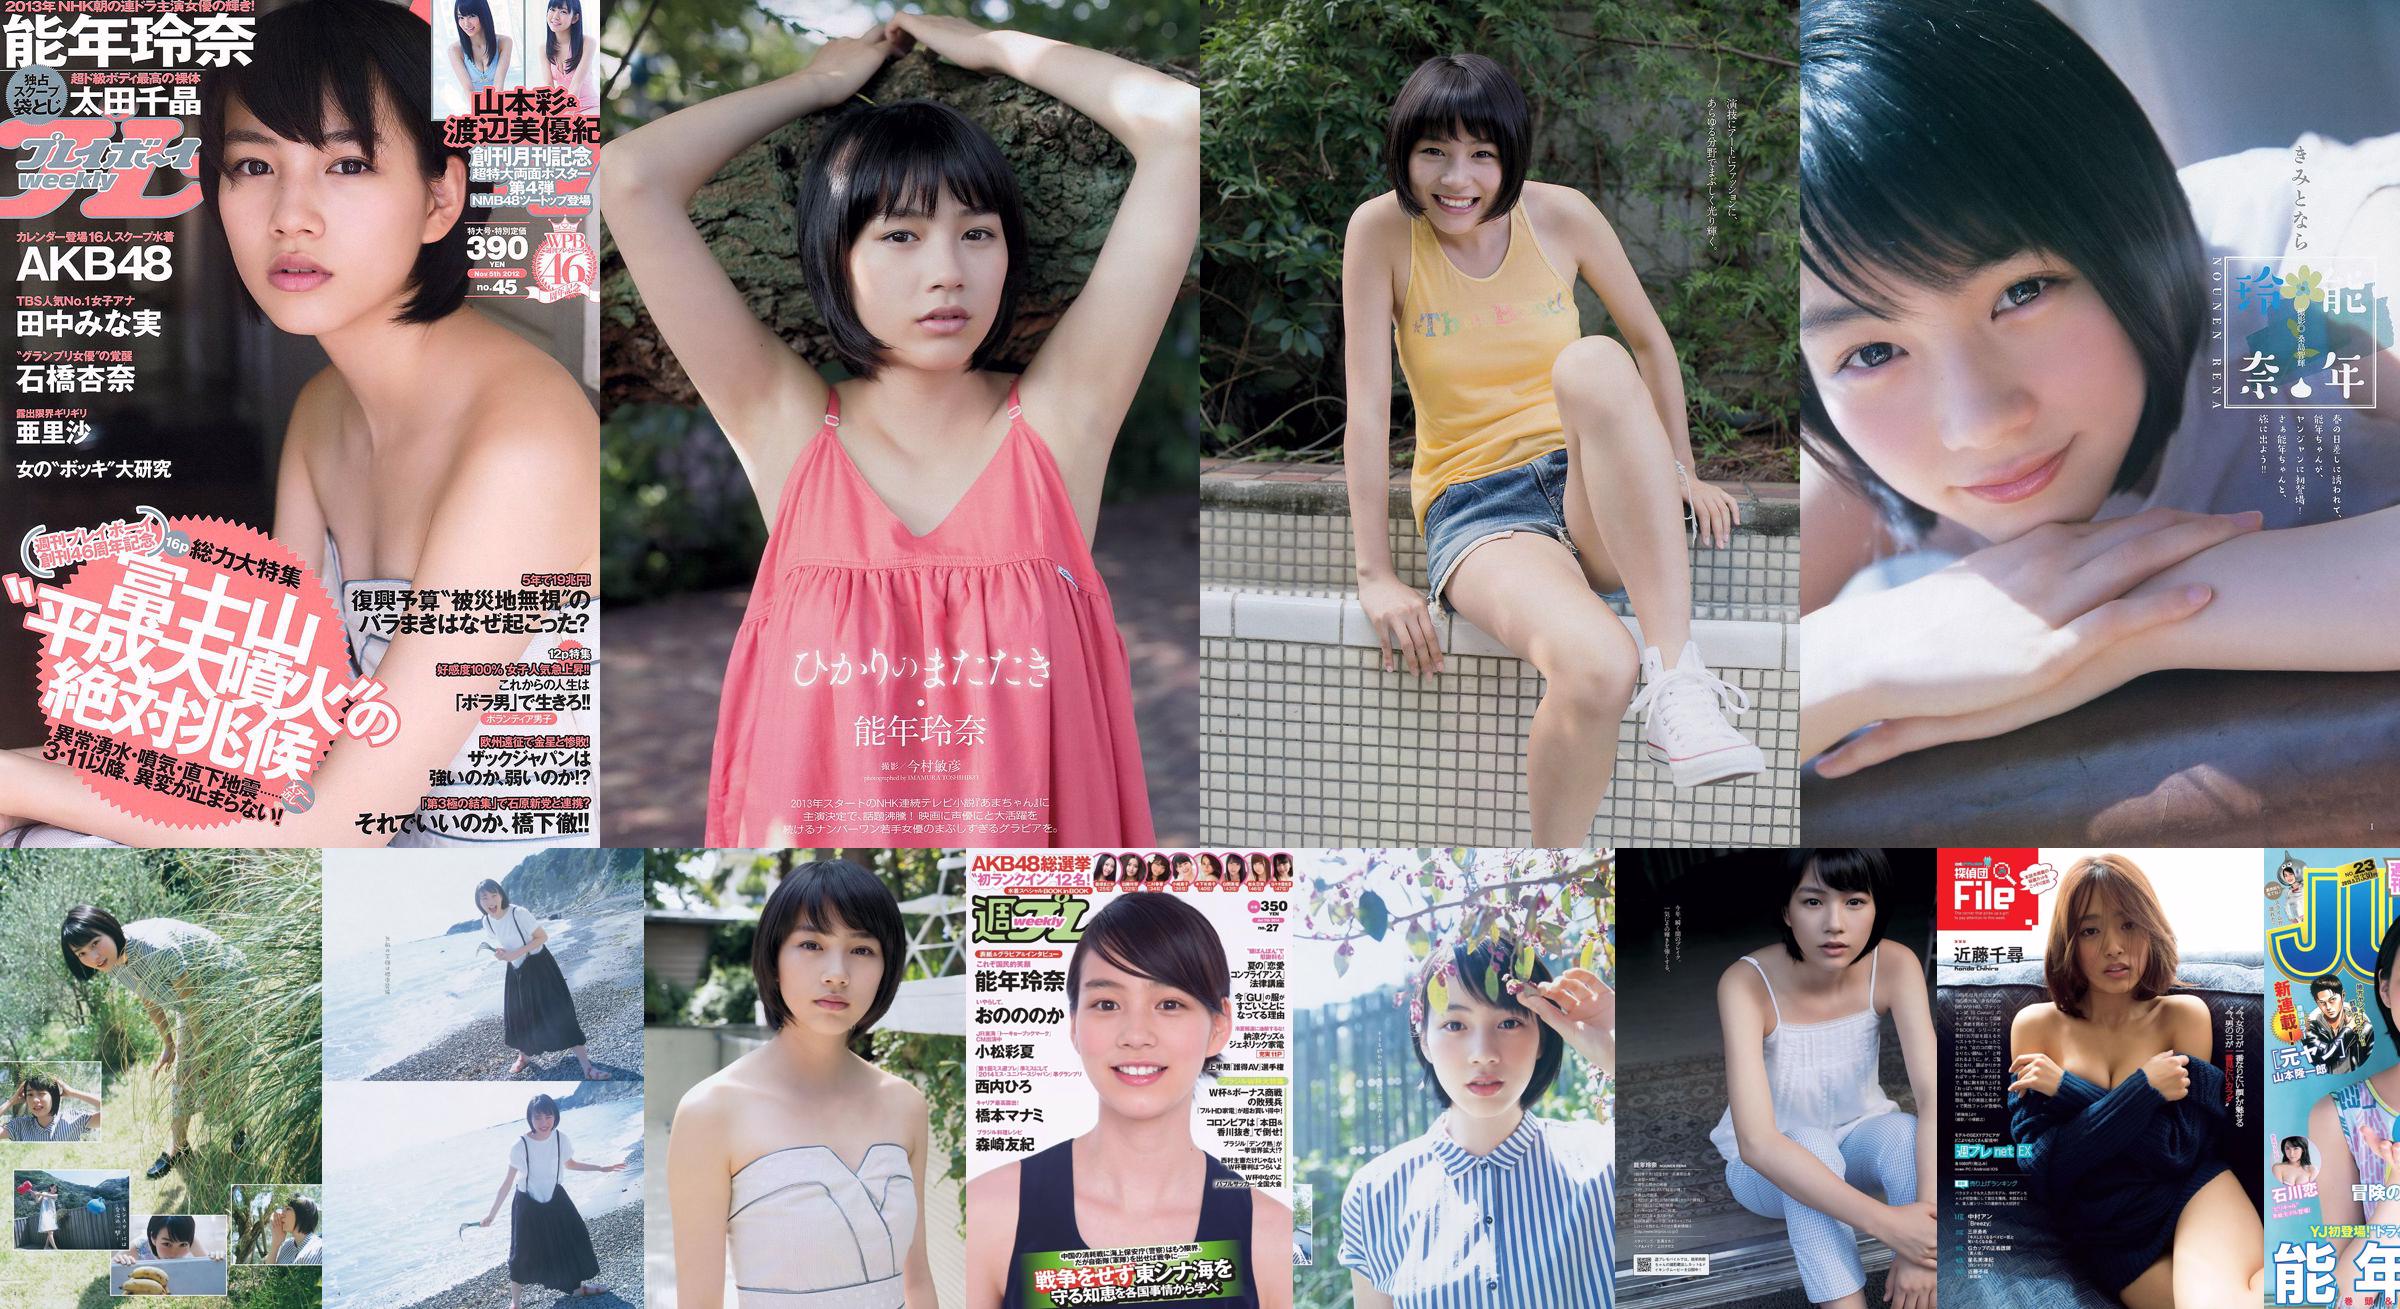 Rena Nonen AKB48 Anna Ishibashi Arisa Ili Chiaki Ota [Weekly Playboy] 2012 No.45 รูปภาพ No.4b7275 หน้า 3